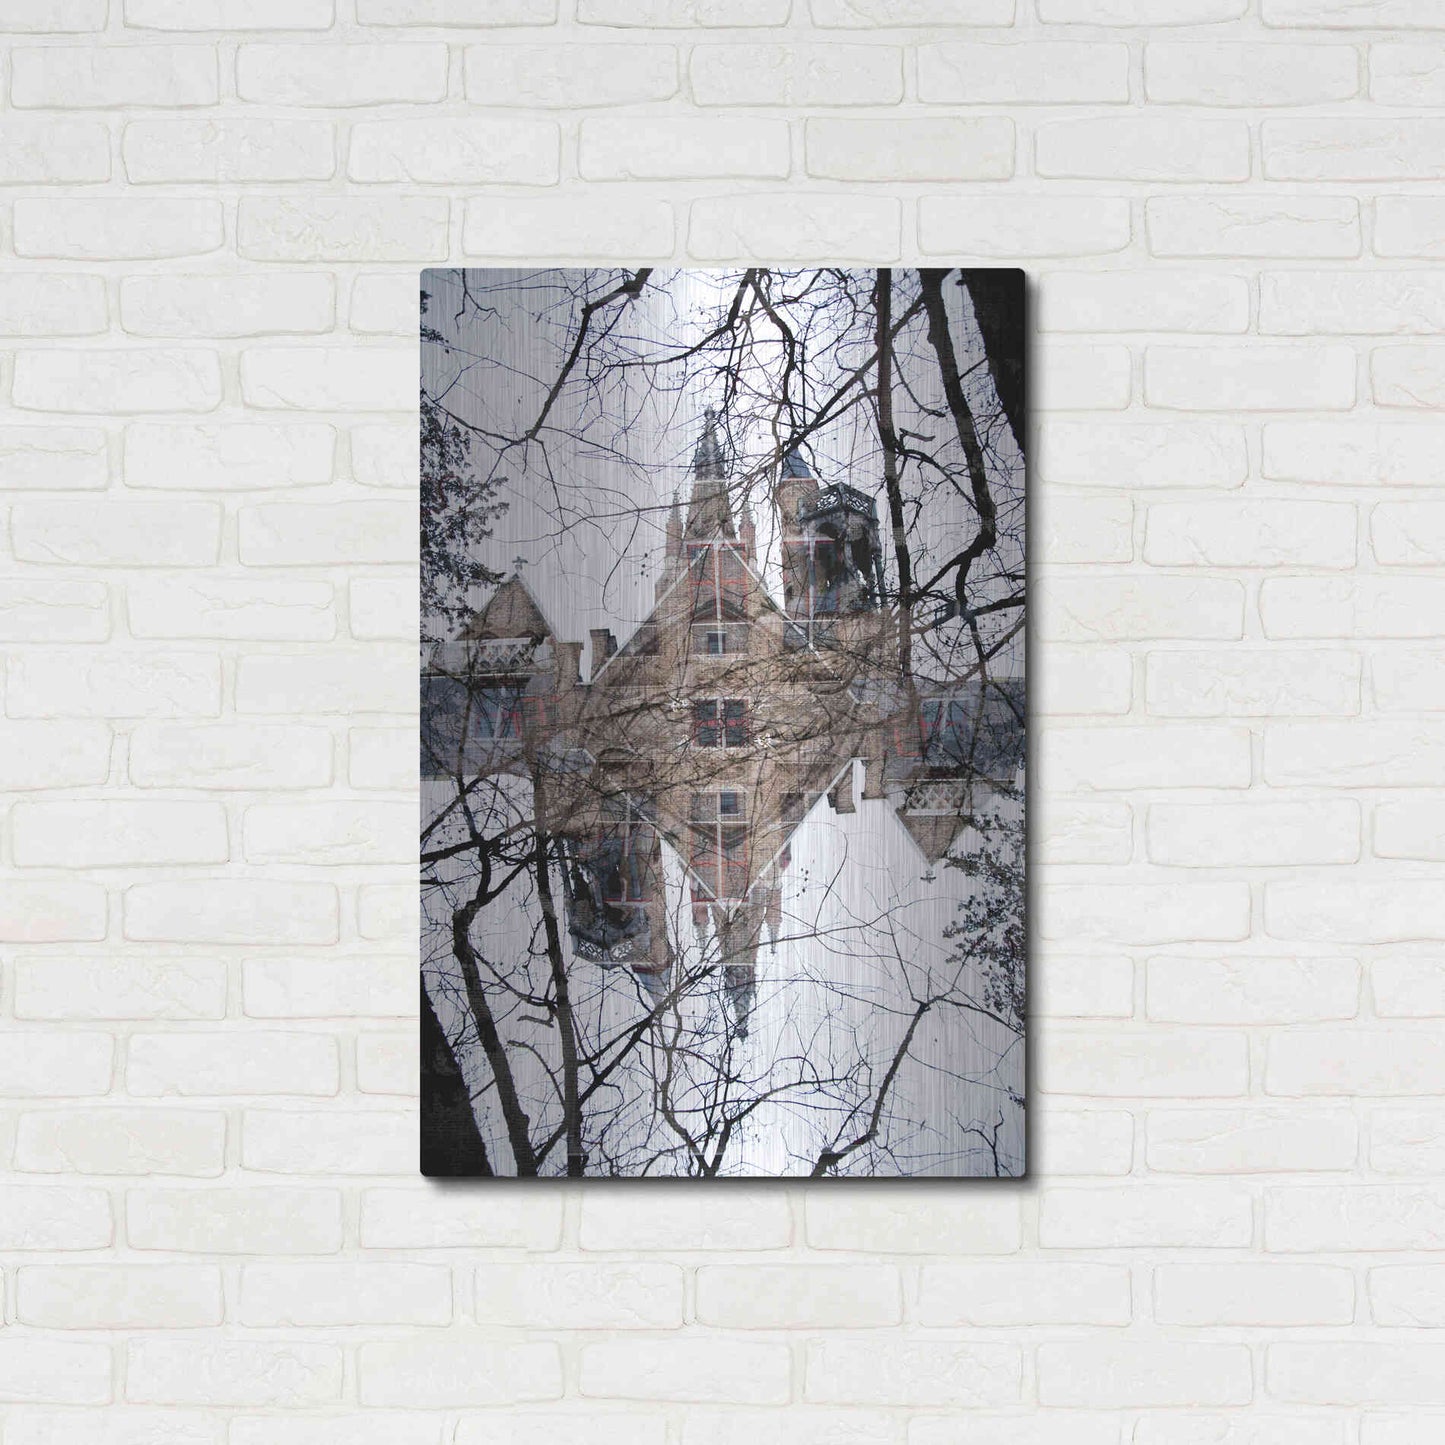 Luxe Metal Art ' Bruges 225' by Robin Vandenabeele, Metal Wall Art,24x36